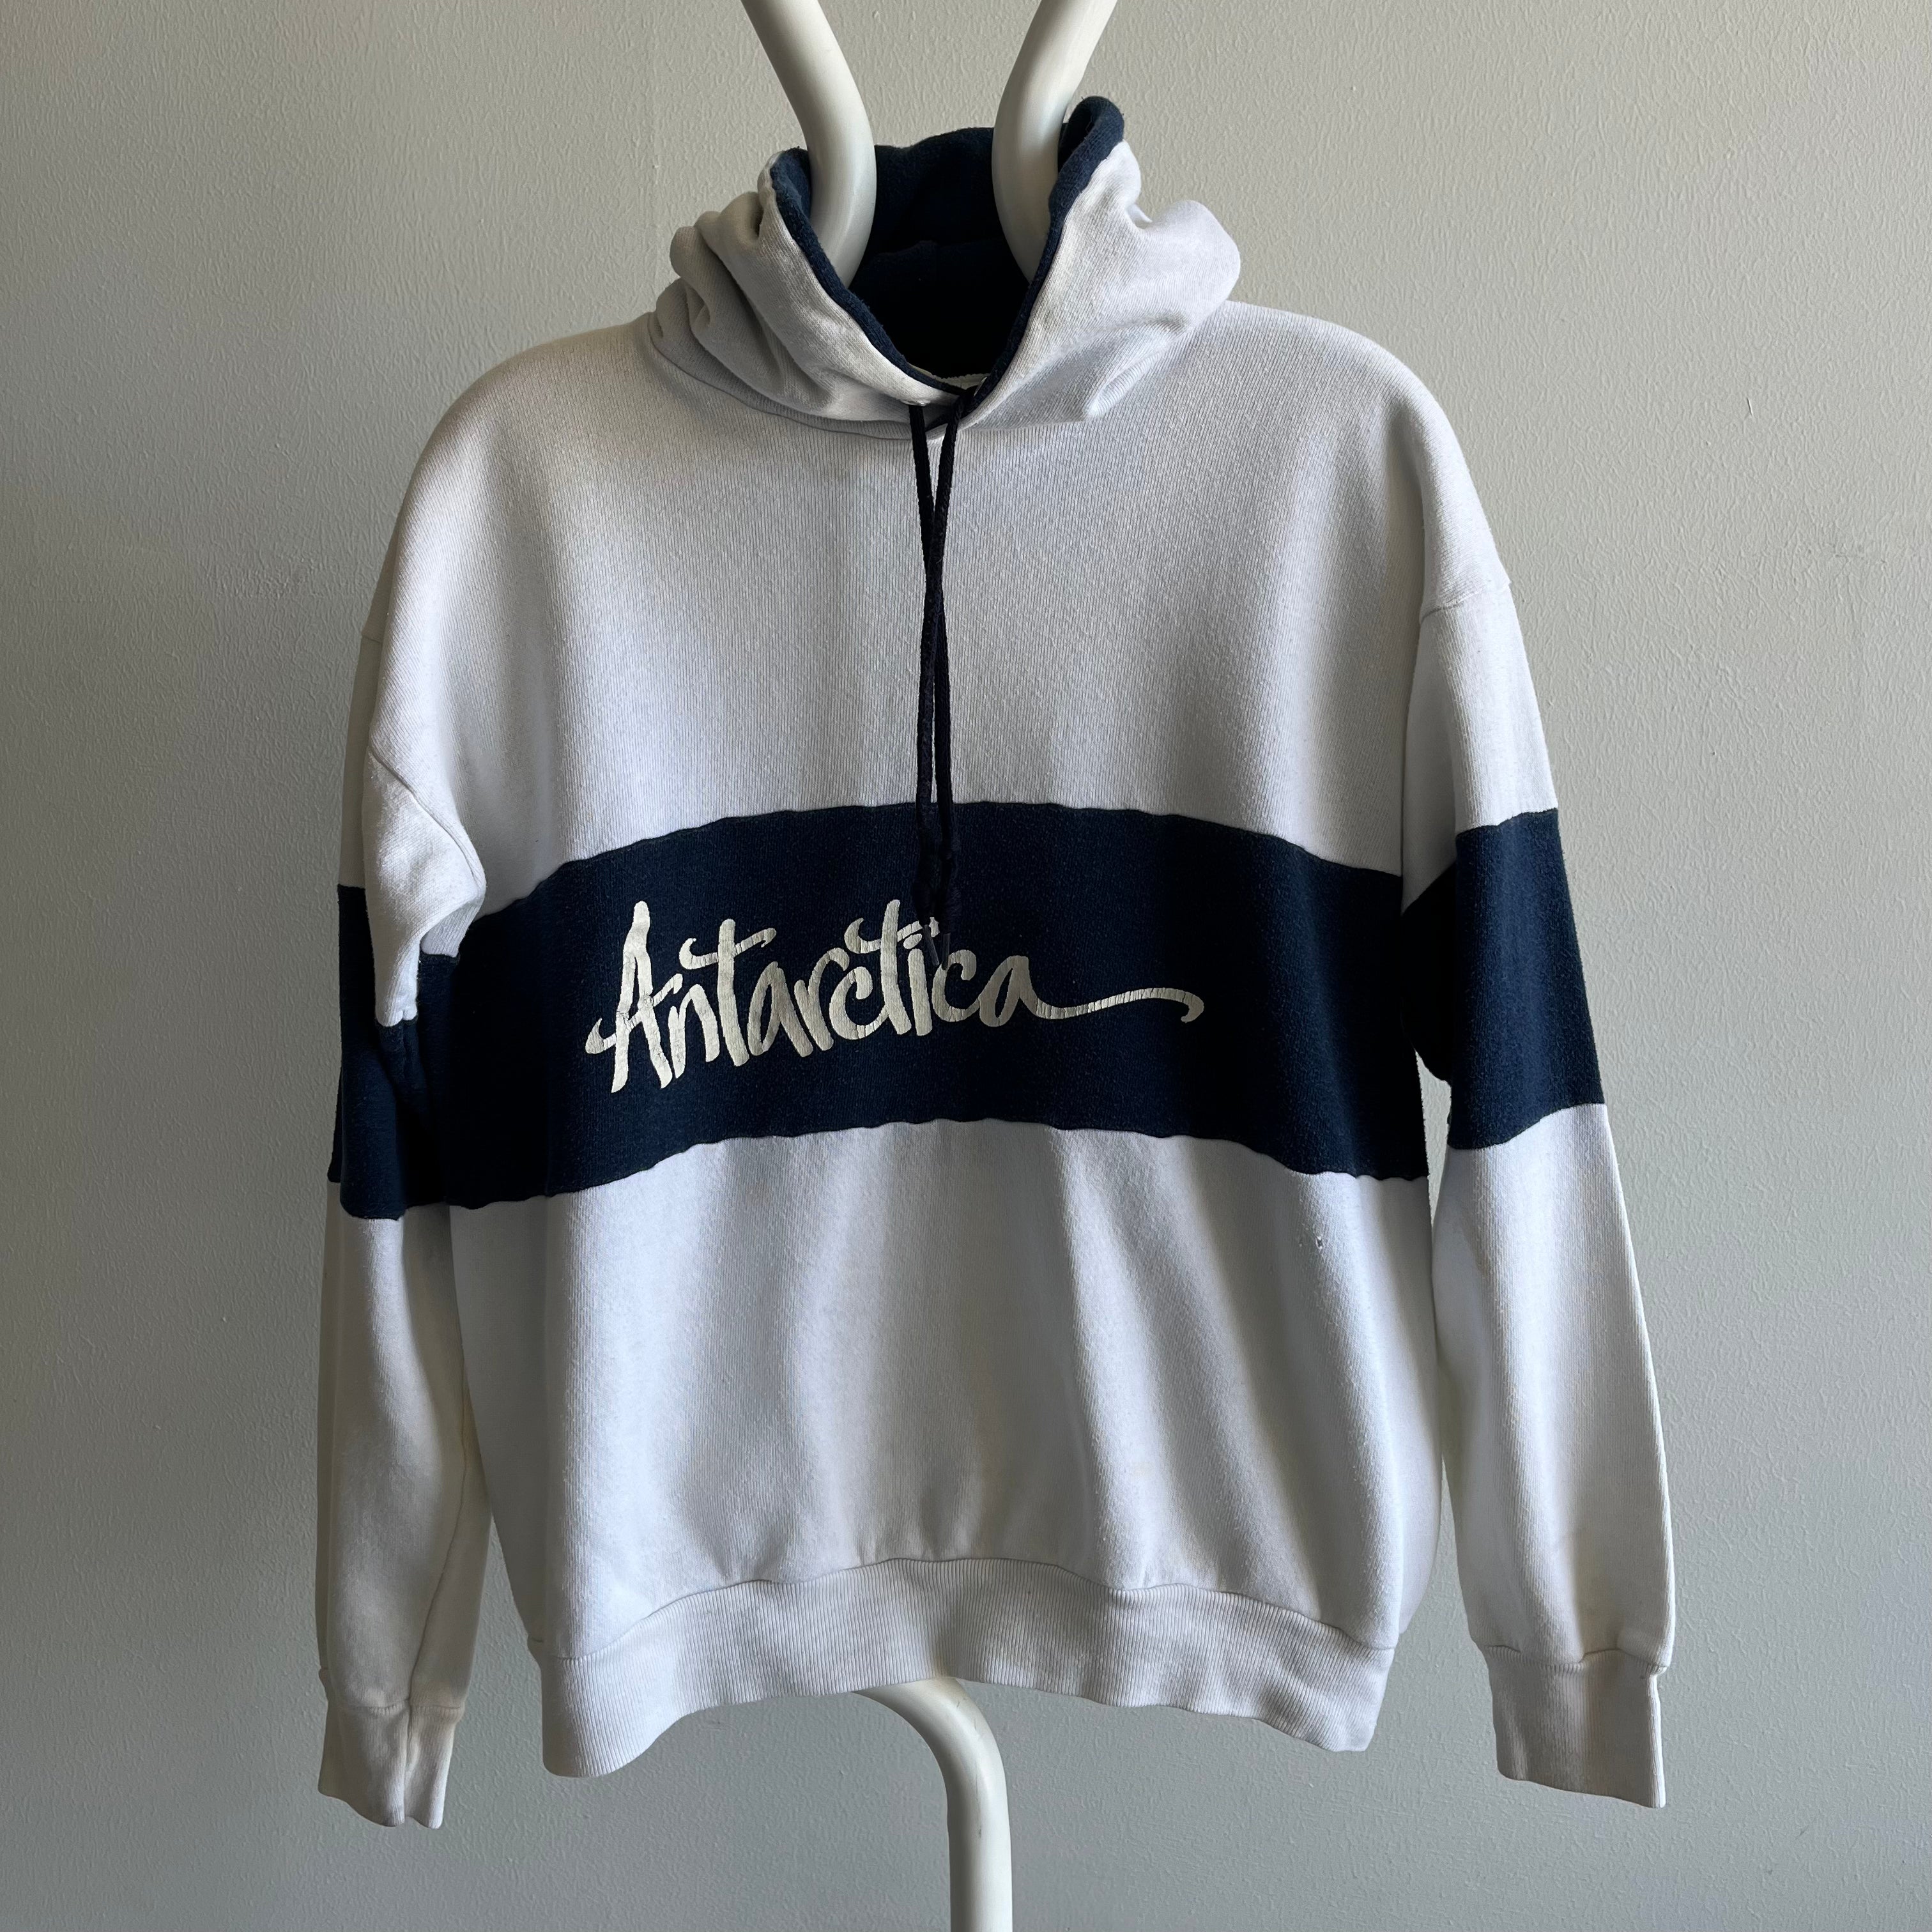 1980s Antartica Color Block Sweatshirt by Velva Sheen - WOW